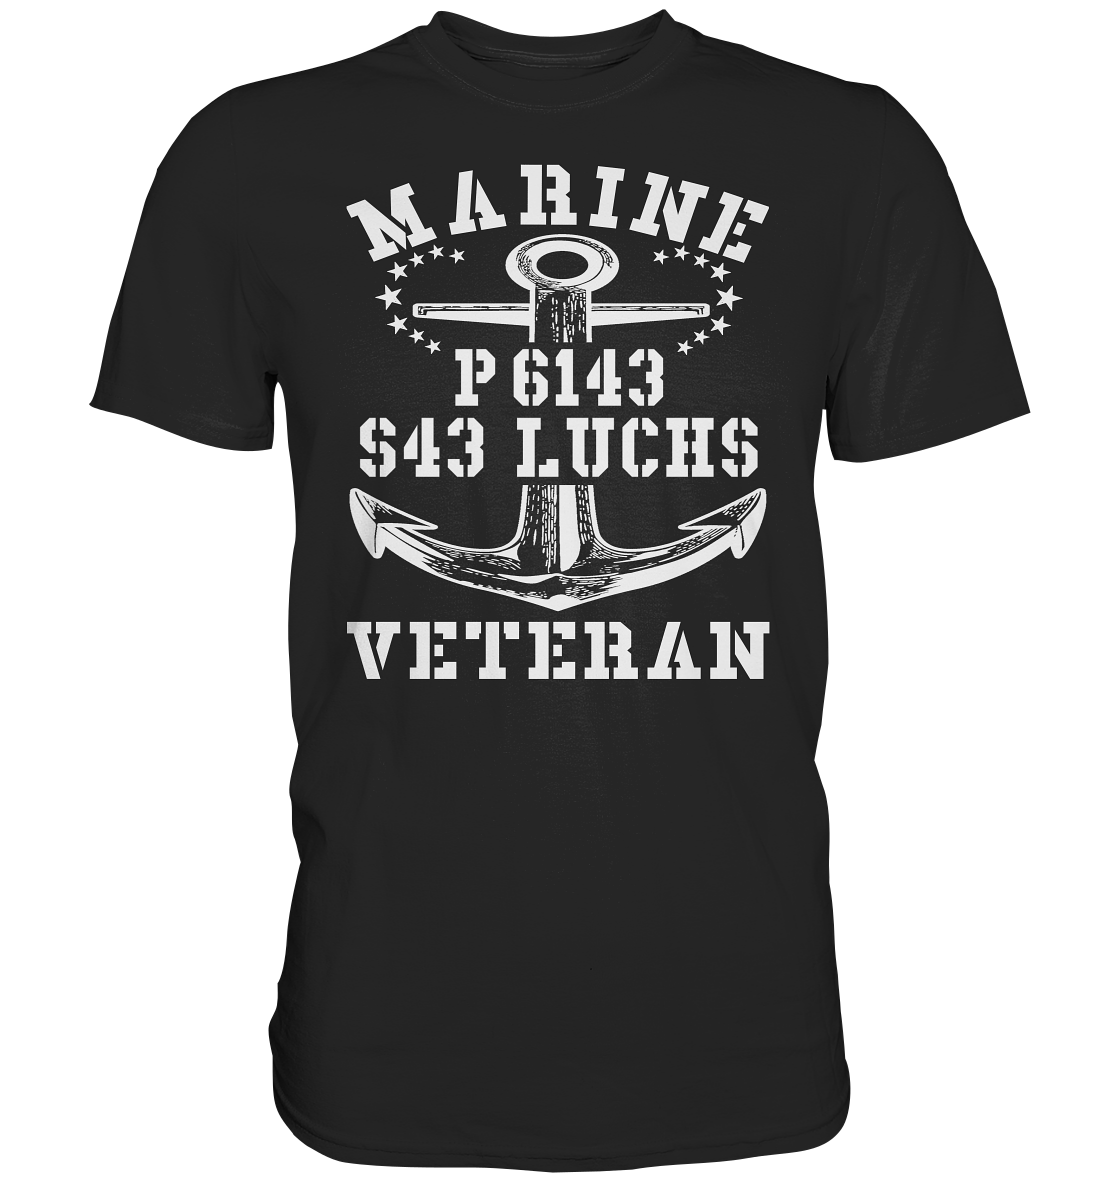 P6143 S43 LUCHS Marine Veteran - Premium Shirt